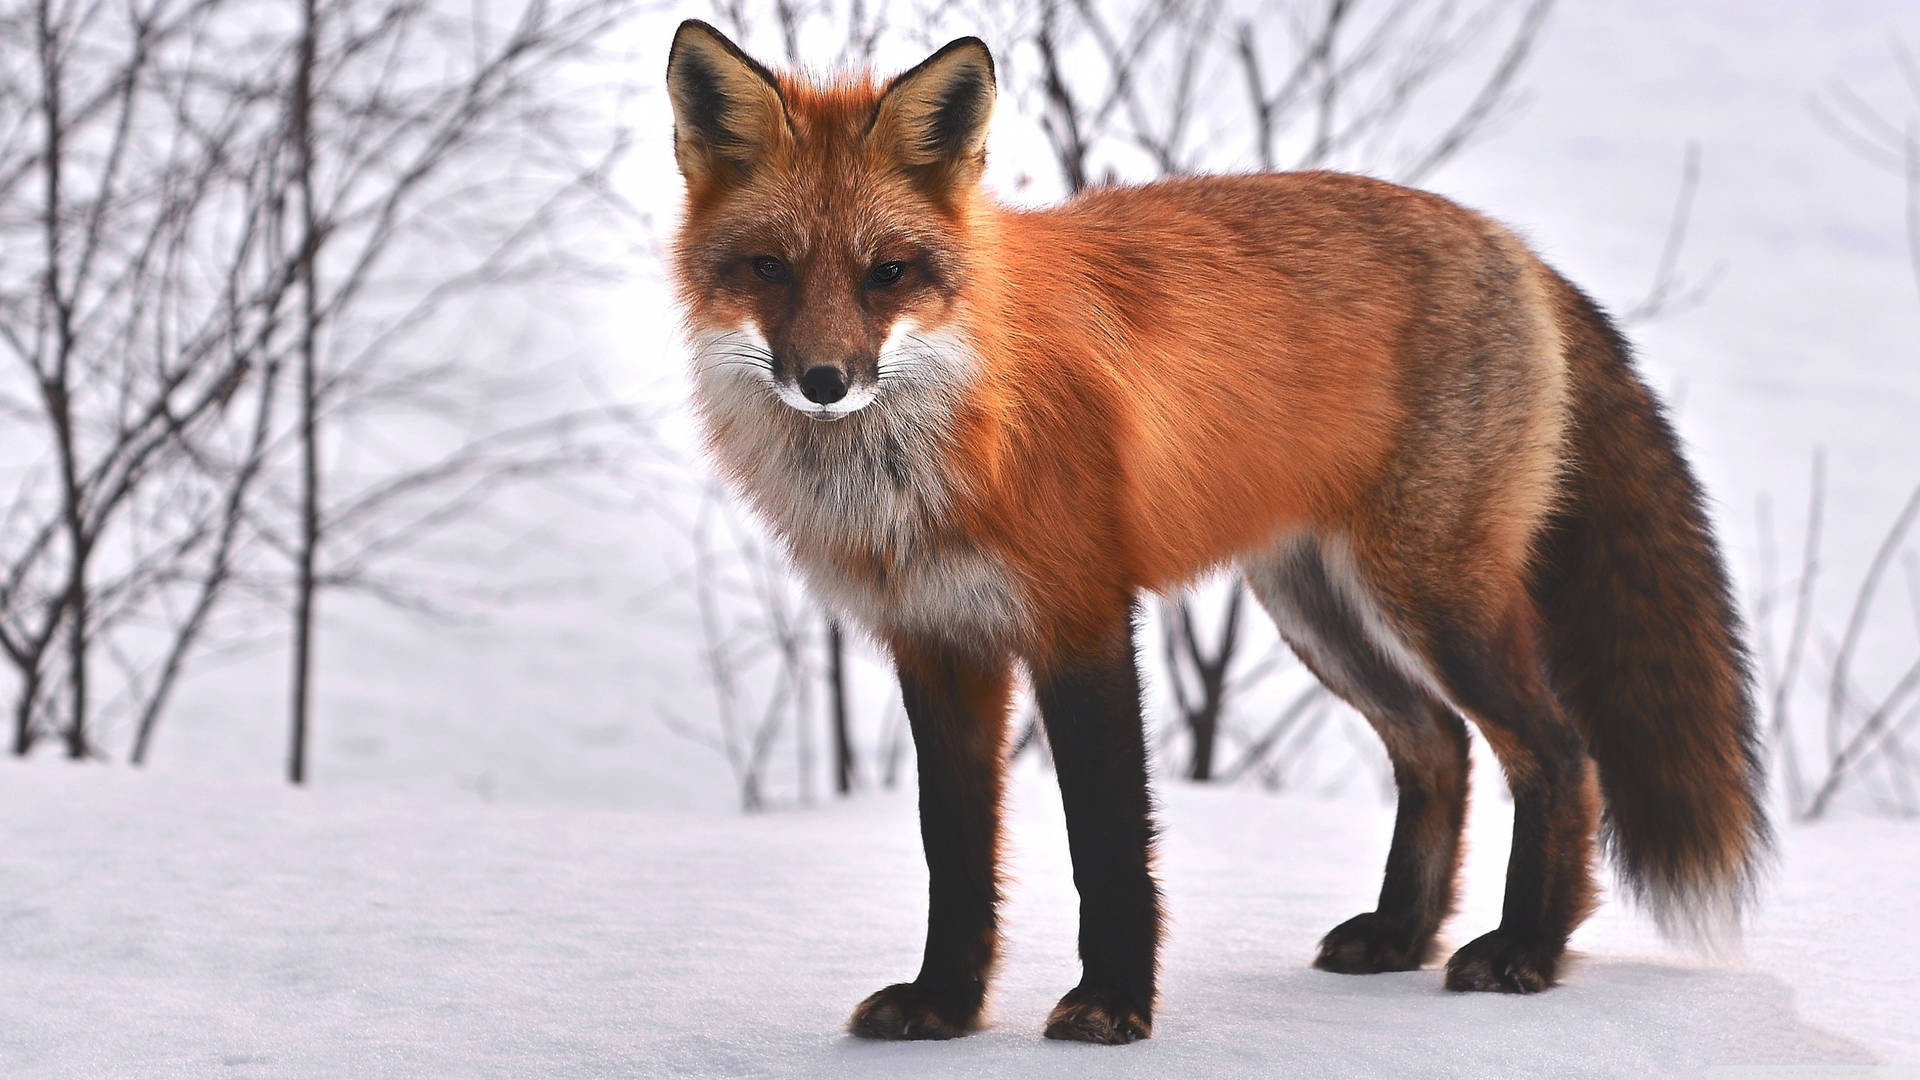 Majestic Red Fox In Winter Scenery Wallpaper